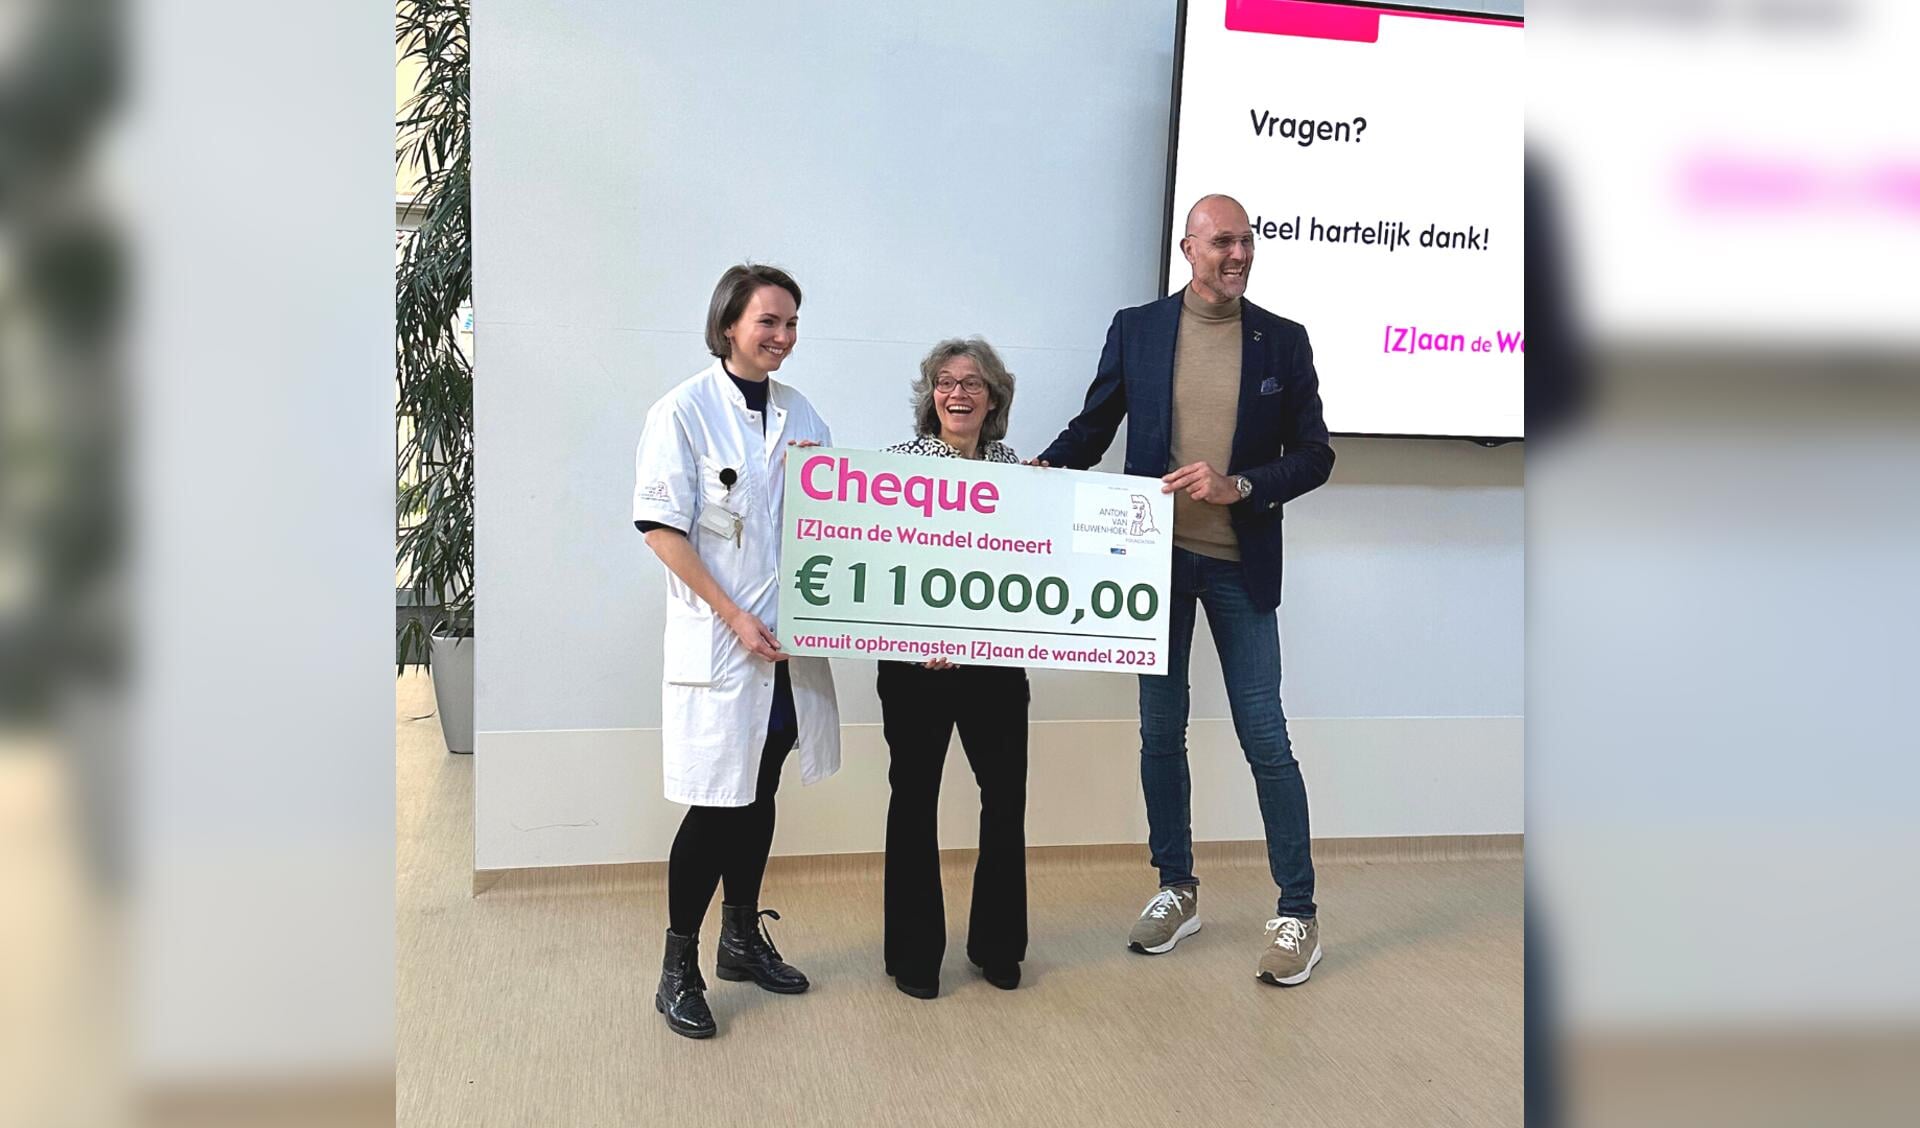 Zaan de Wandel organisator Dick Dekker geeft met gepaste trots voor het schitterende bedrag van maar liefst € 110.000 de cheque aan Prof. Sabine Linn en Annemiek van Ommen van het Antoni van Leeuwenhoek.  